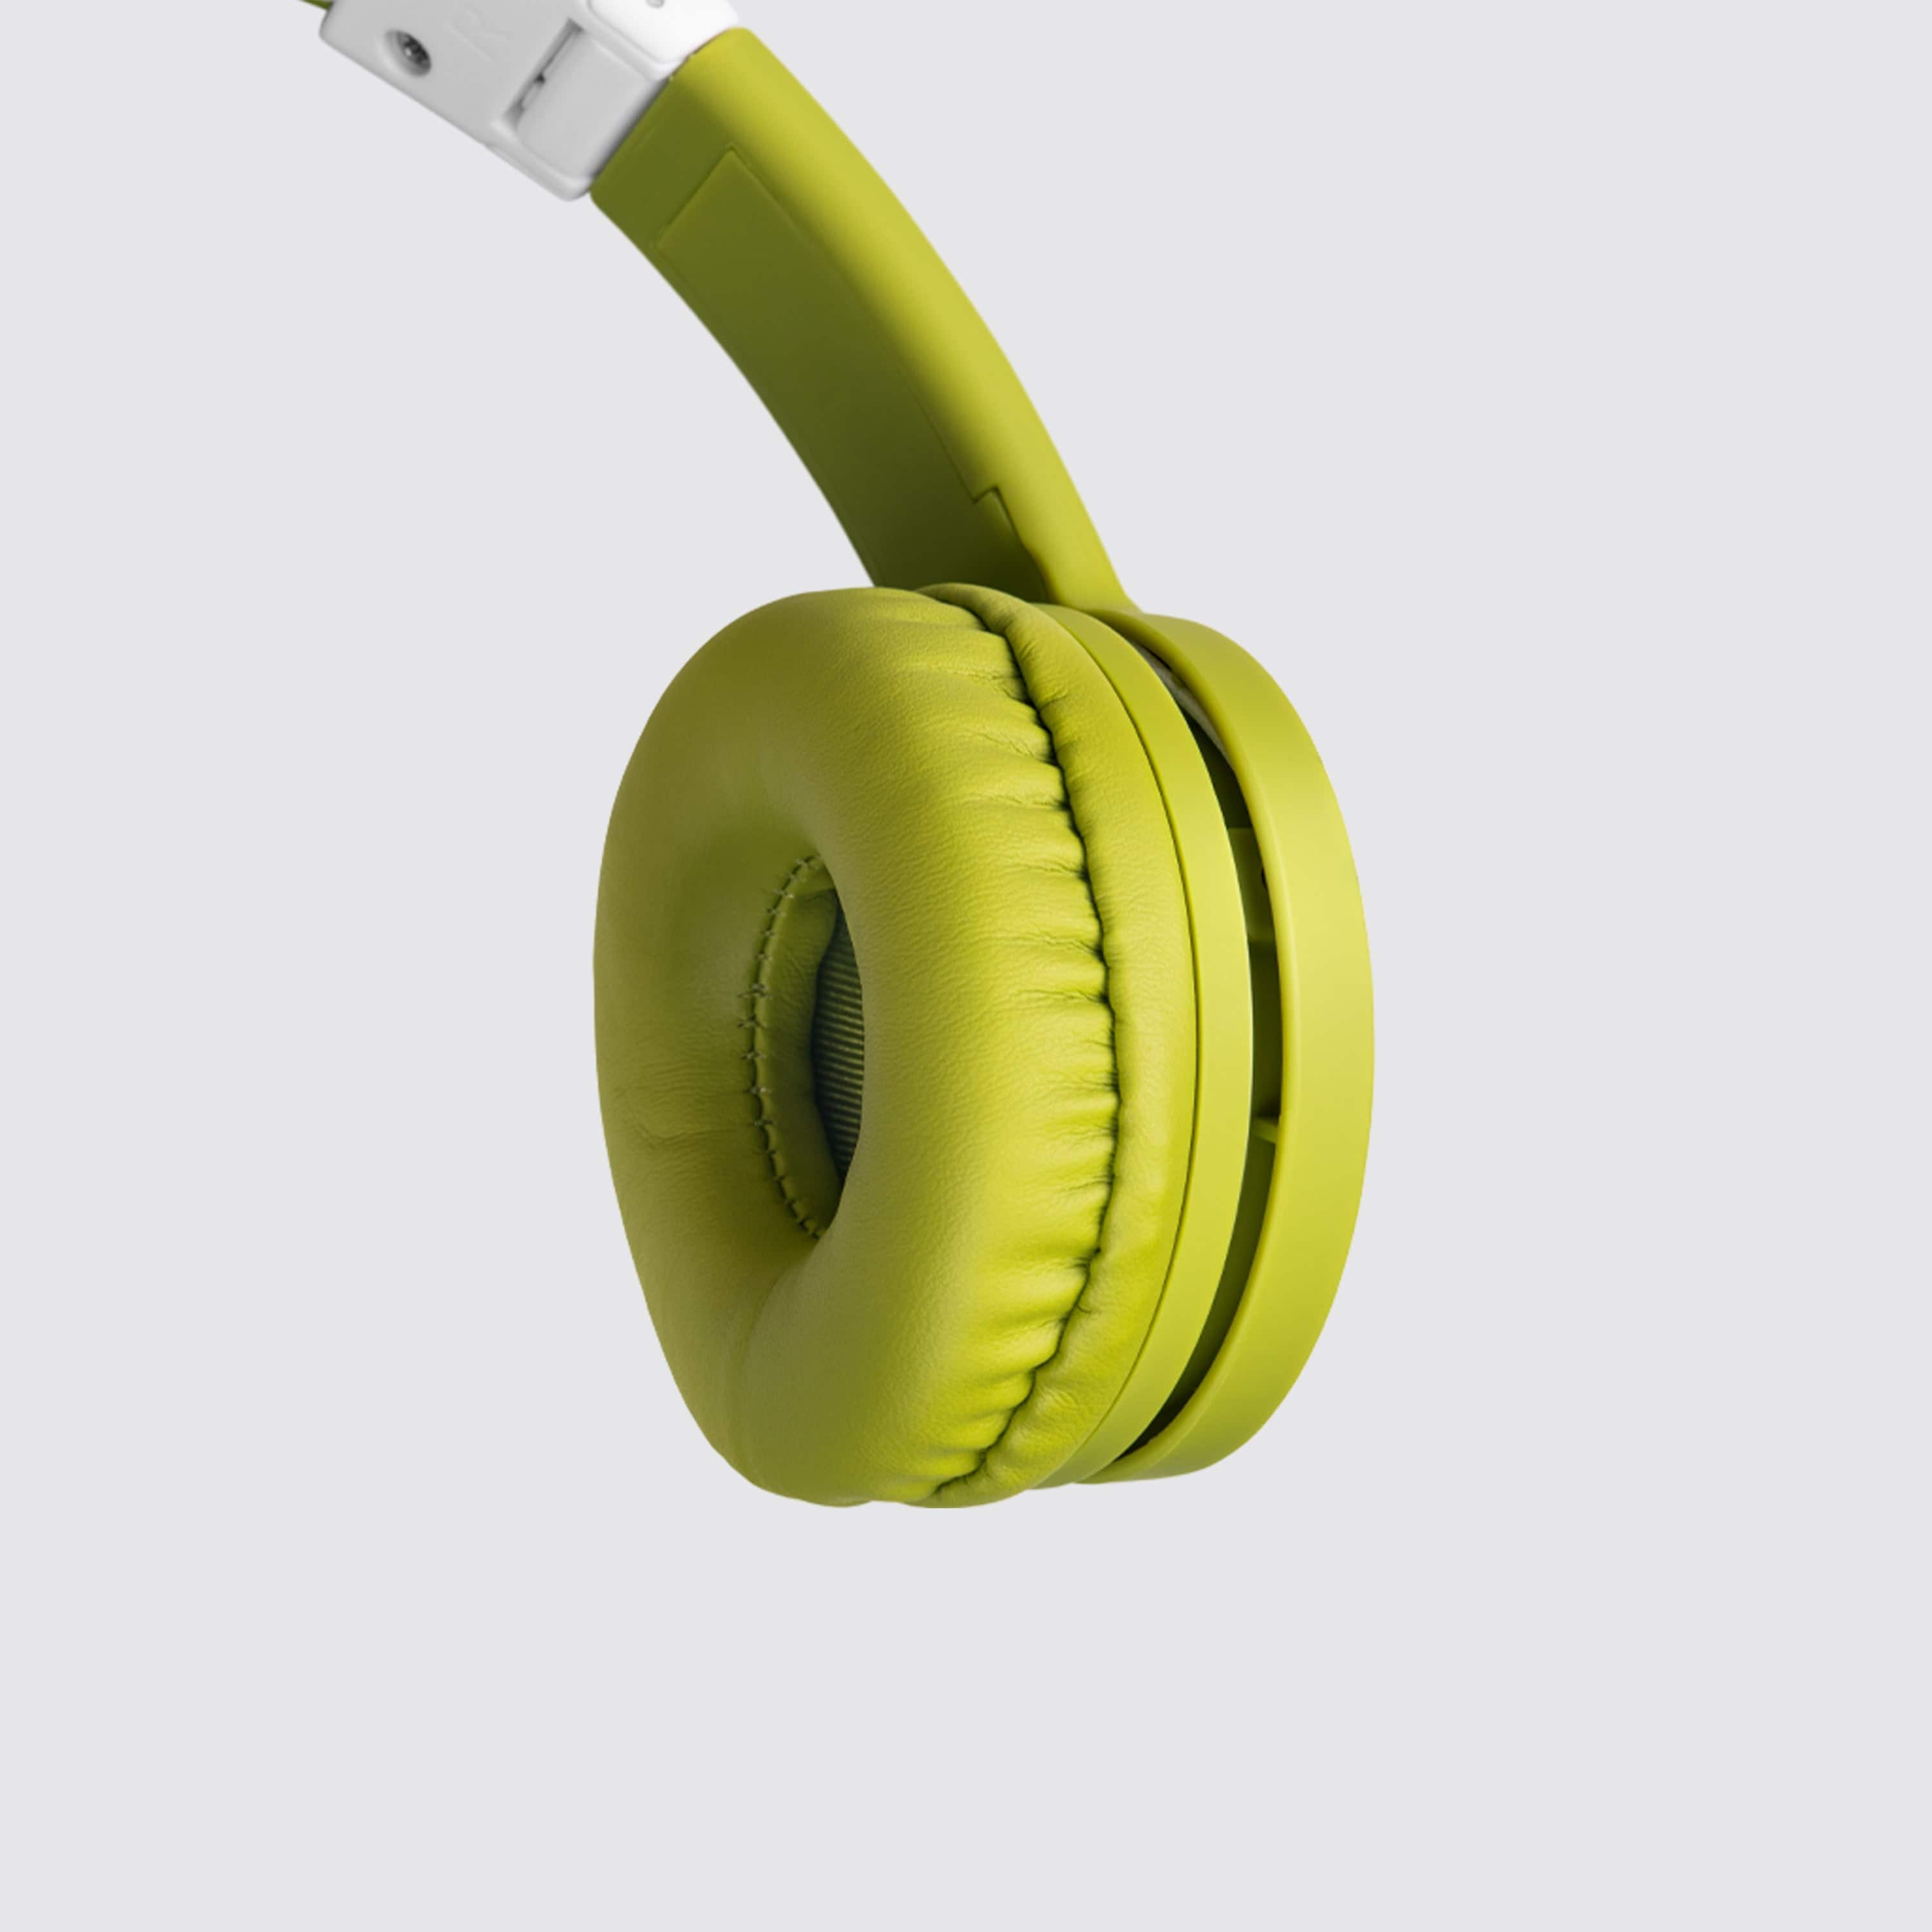 Tonies Green Toniebox Starter Set Headphones + Case US Release